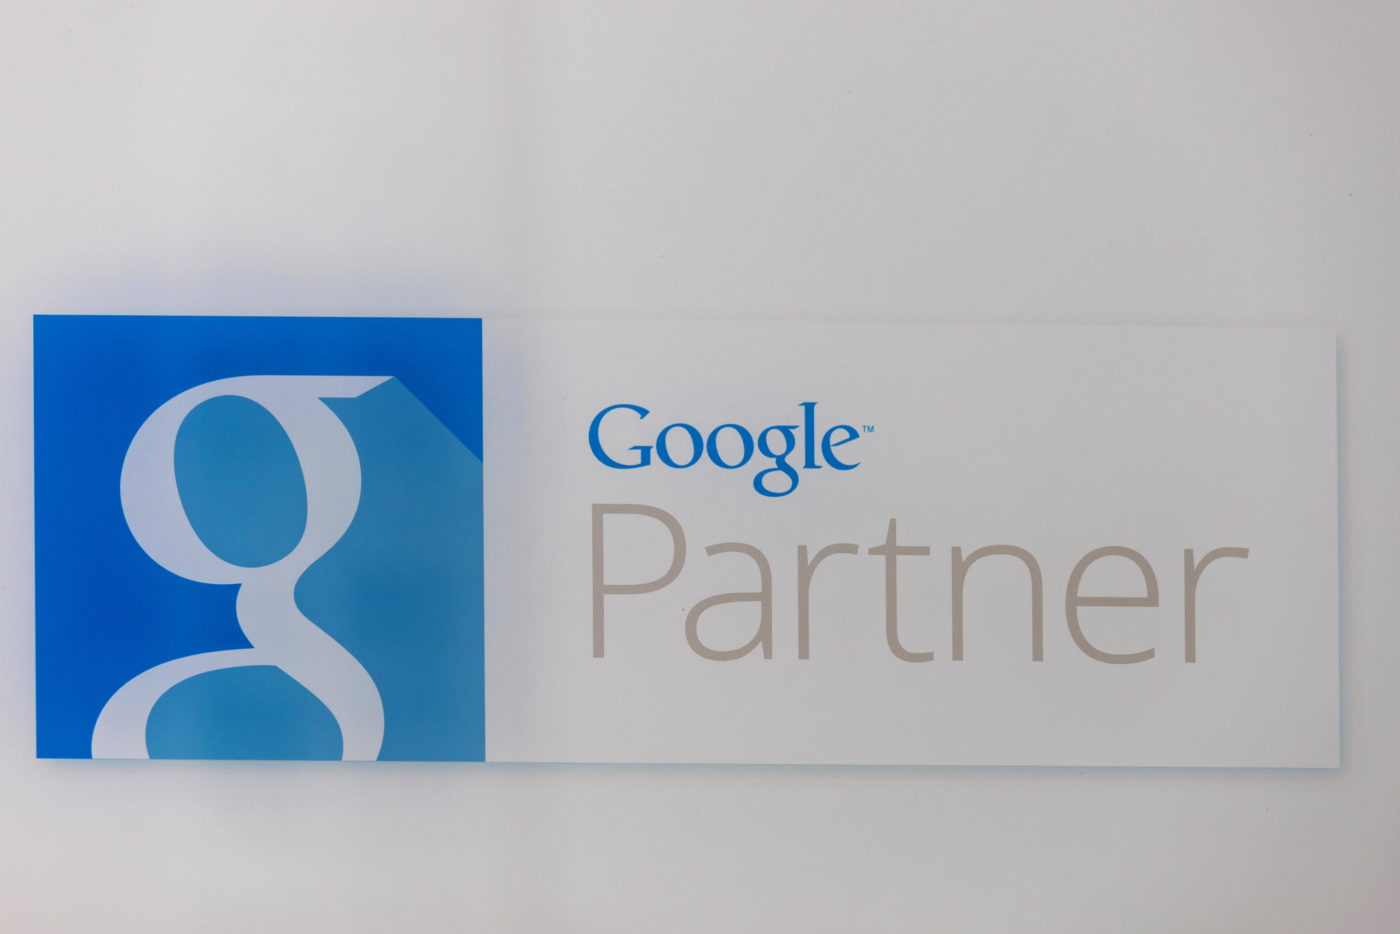 google partner sign